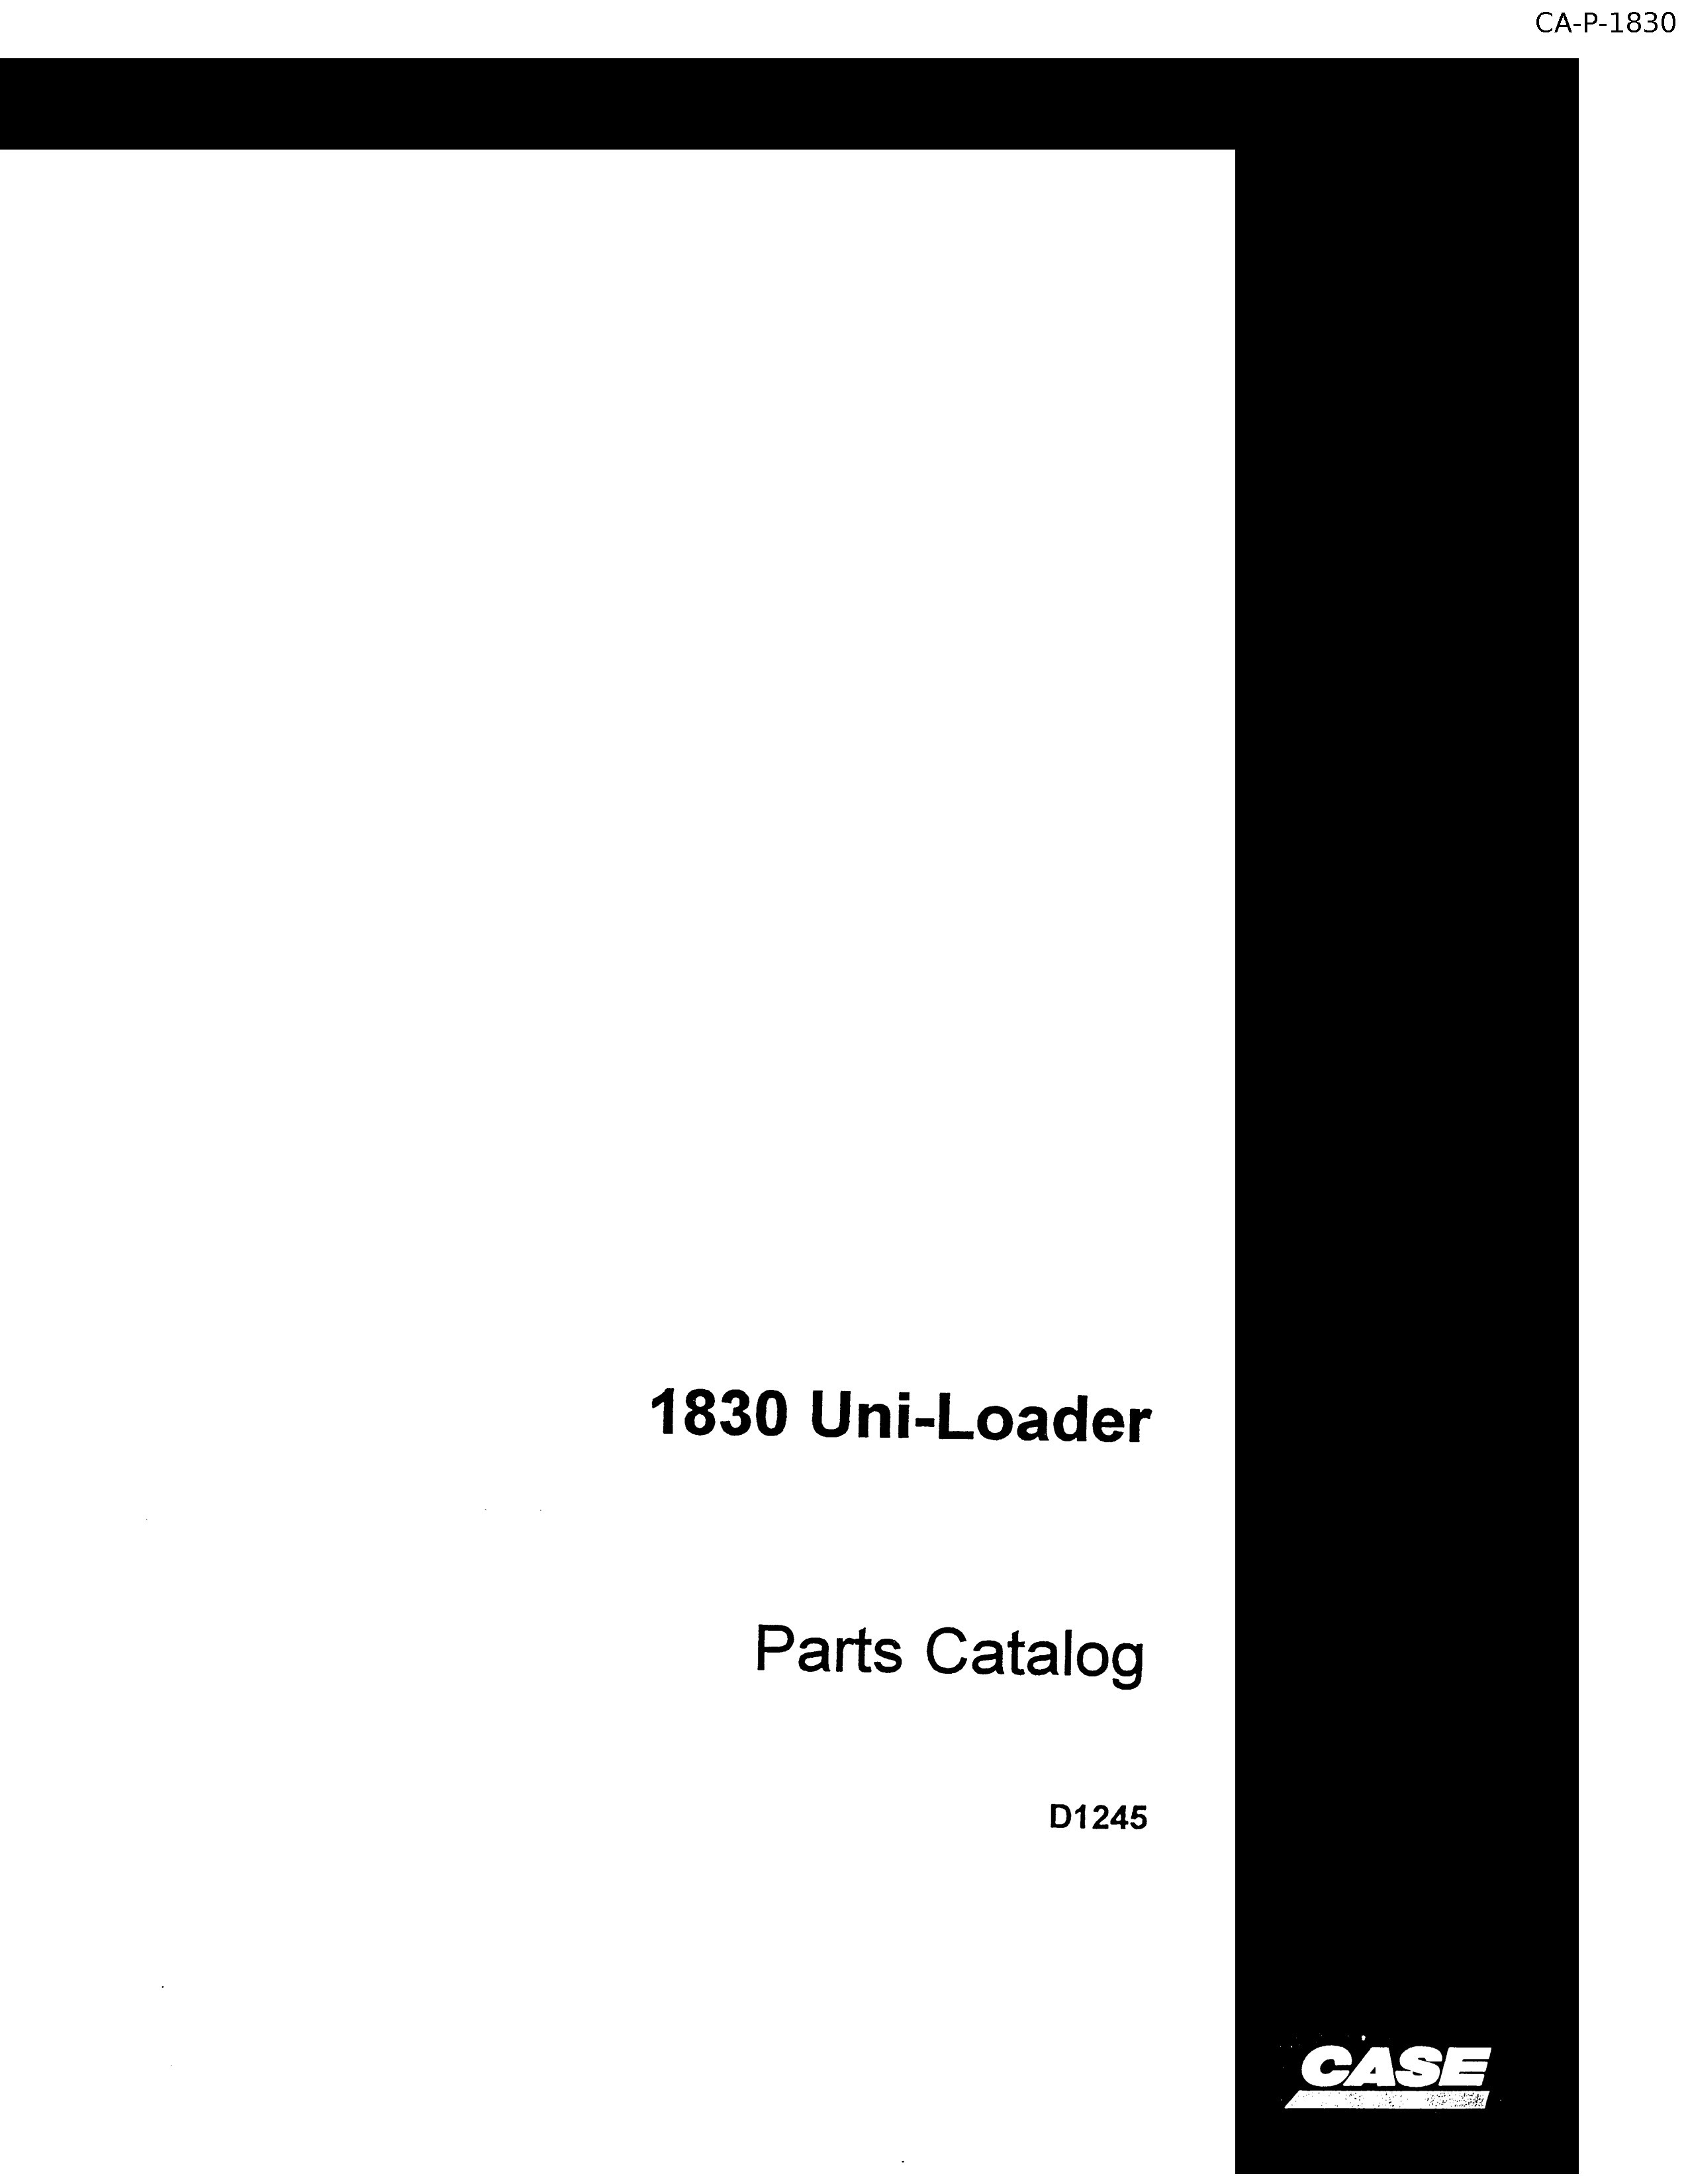 Parts Manual Case 1830 Uniloader